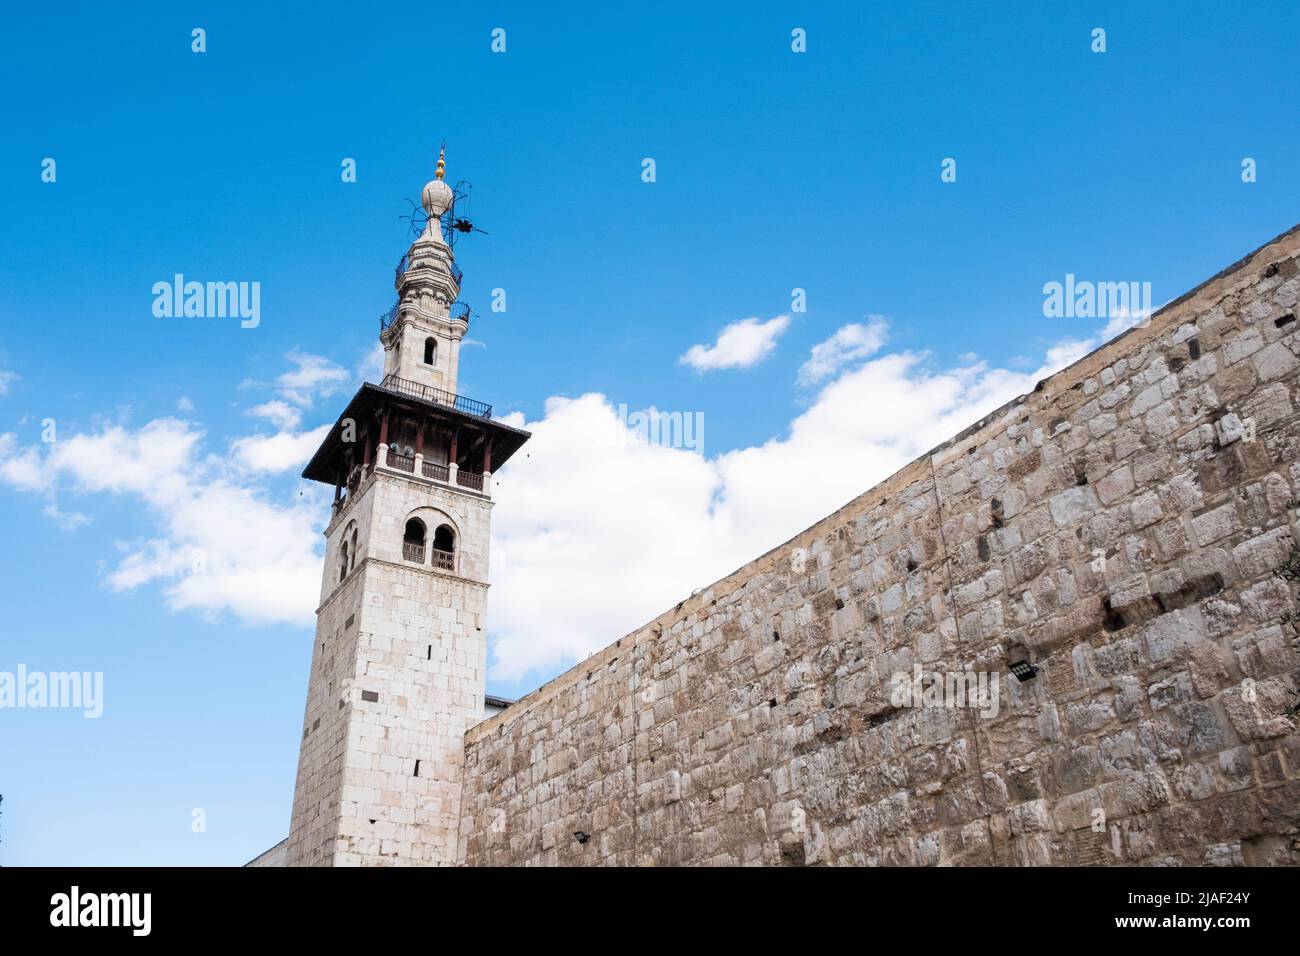 Damasco, Siria - Mayo de 2022: Exterior de la mezquita de Umayyad y mausoleo de Saladín en Damasco Foto de stock